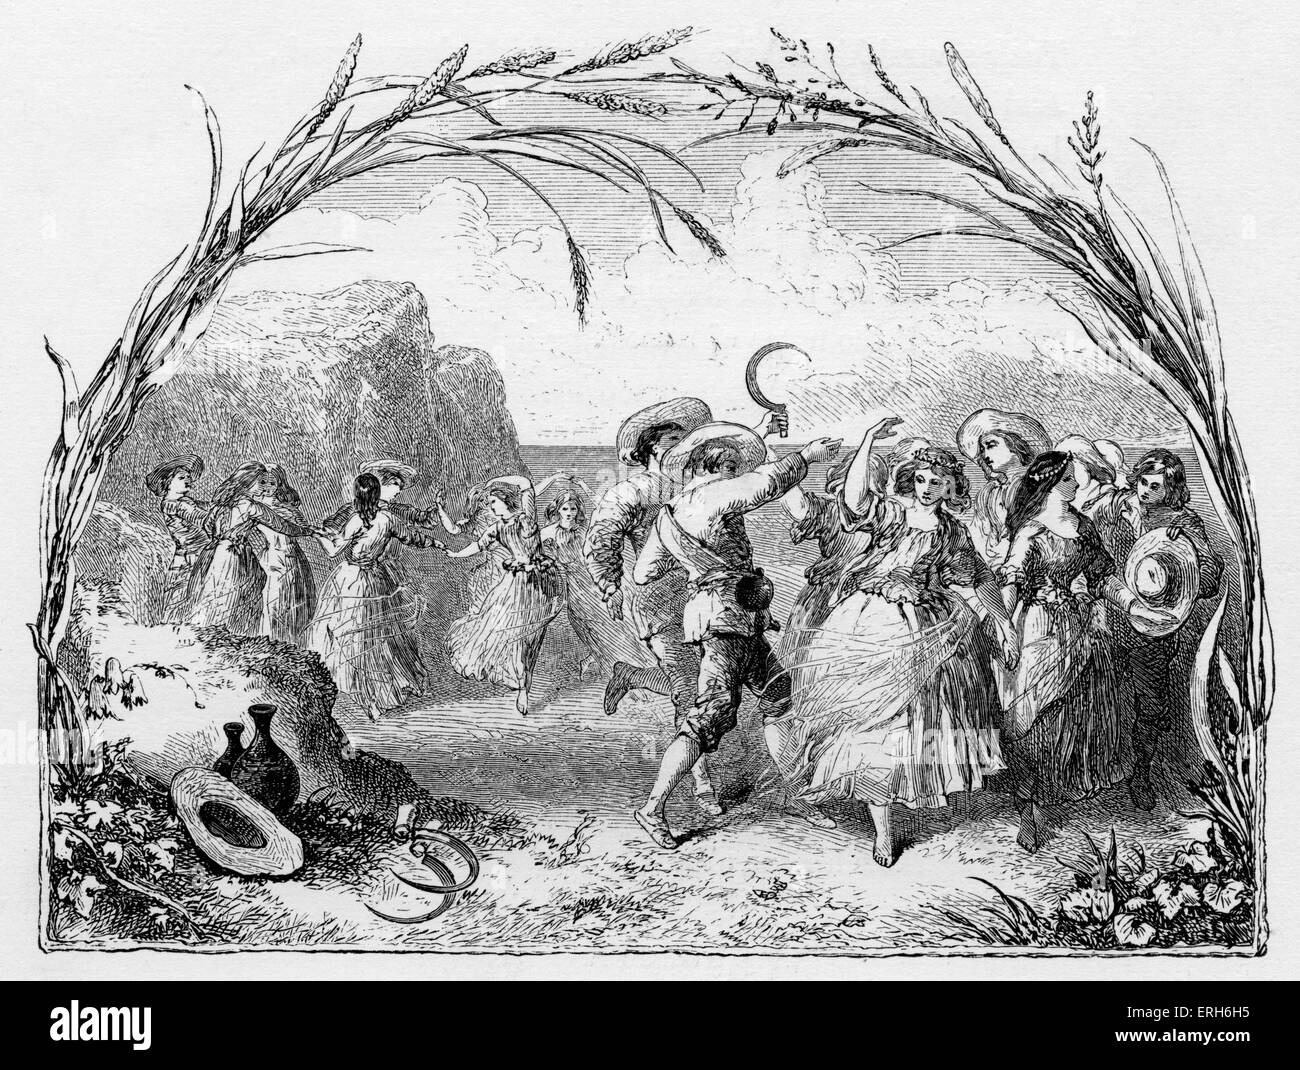 Shakespeares spielen "Der Sturm" - Akt IV - Szene 1 - vor Prosperos Zelle. Ein Tanz der Nymphen und Schnitter. Stockfoto